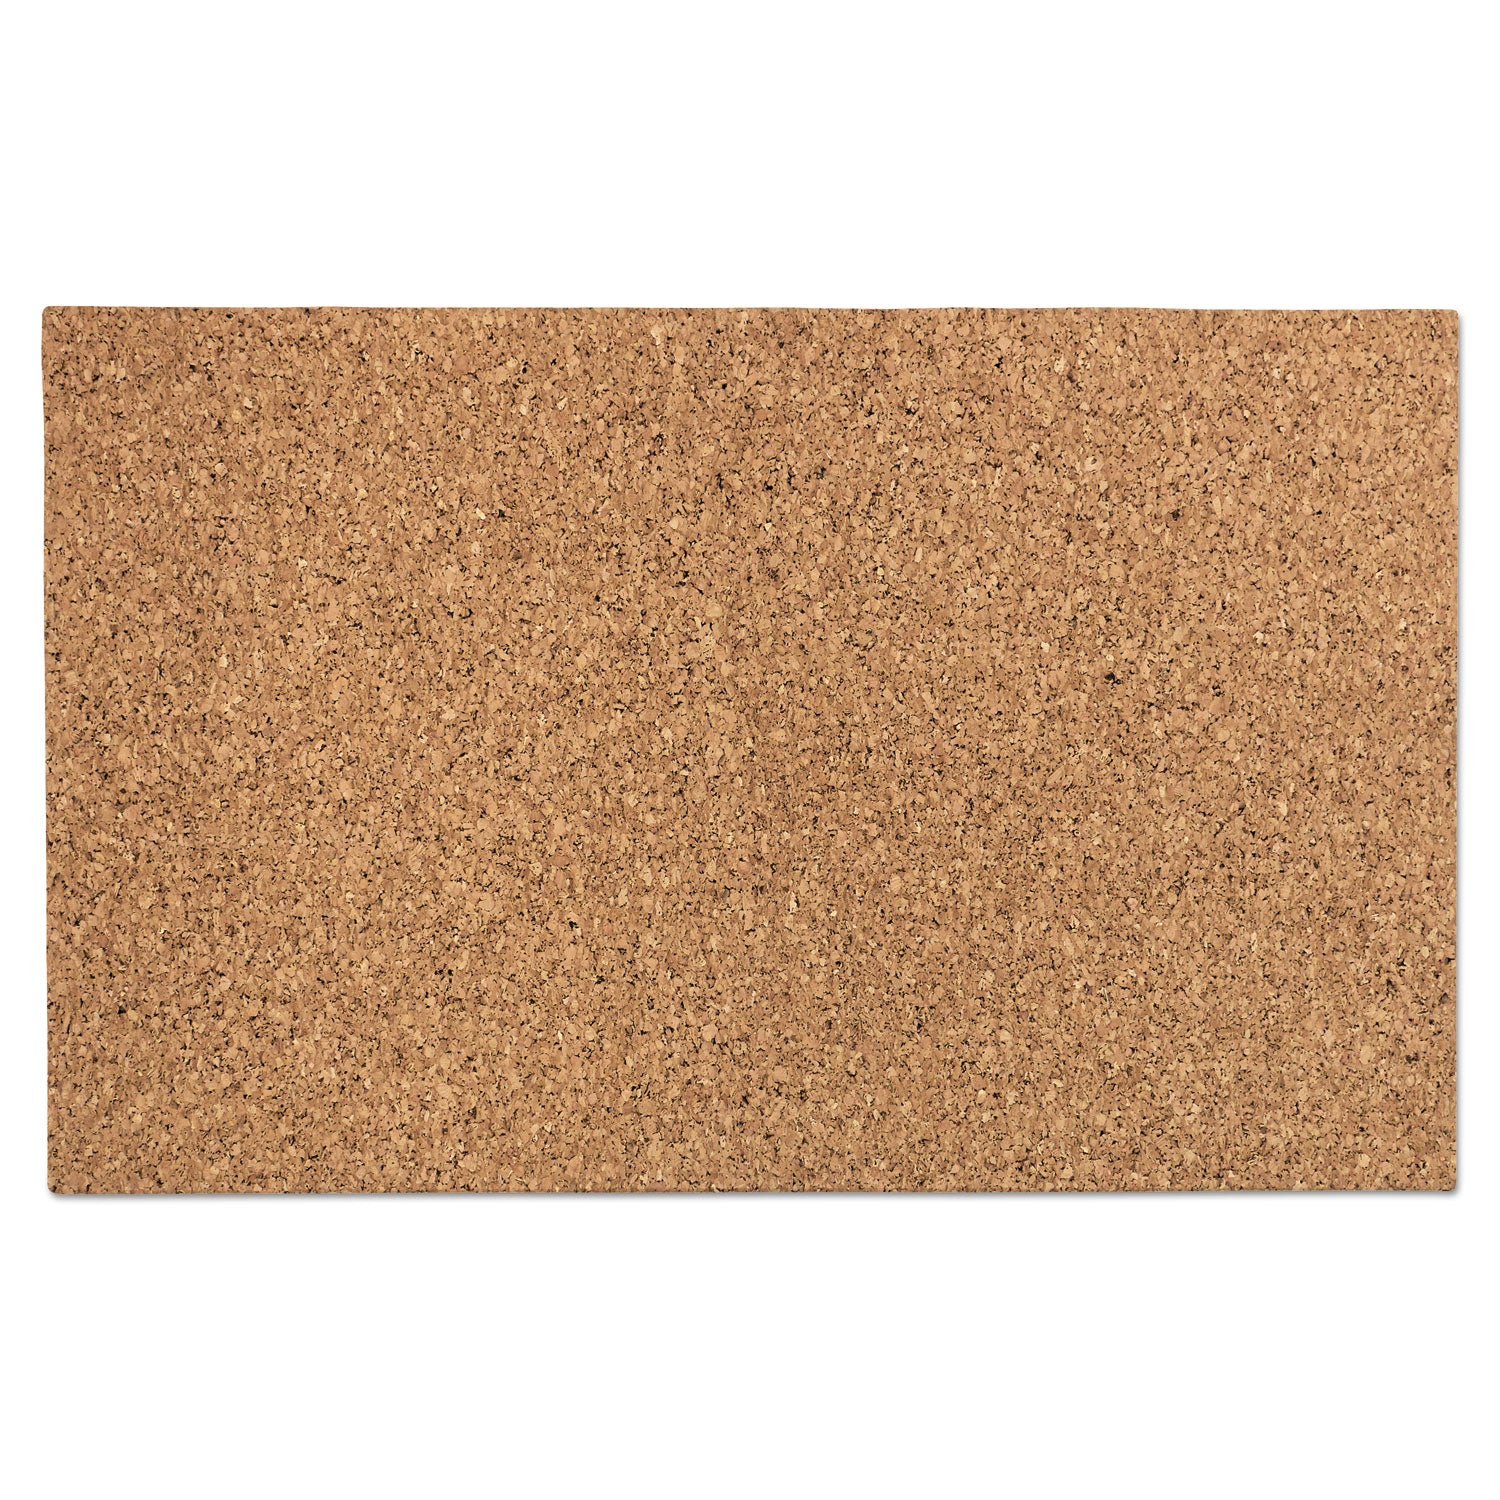 idesign-frameless-cork-bulletin-board-24-x-38-tan-surface_ice35010 - 1